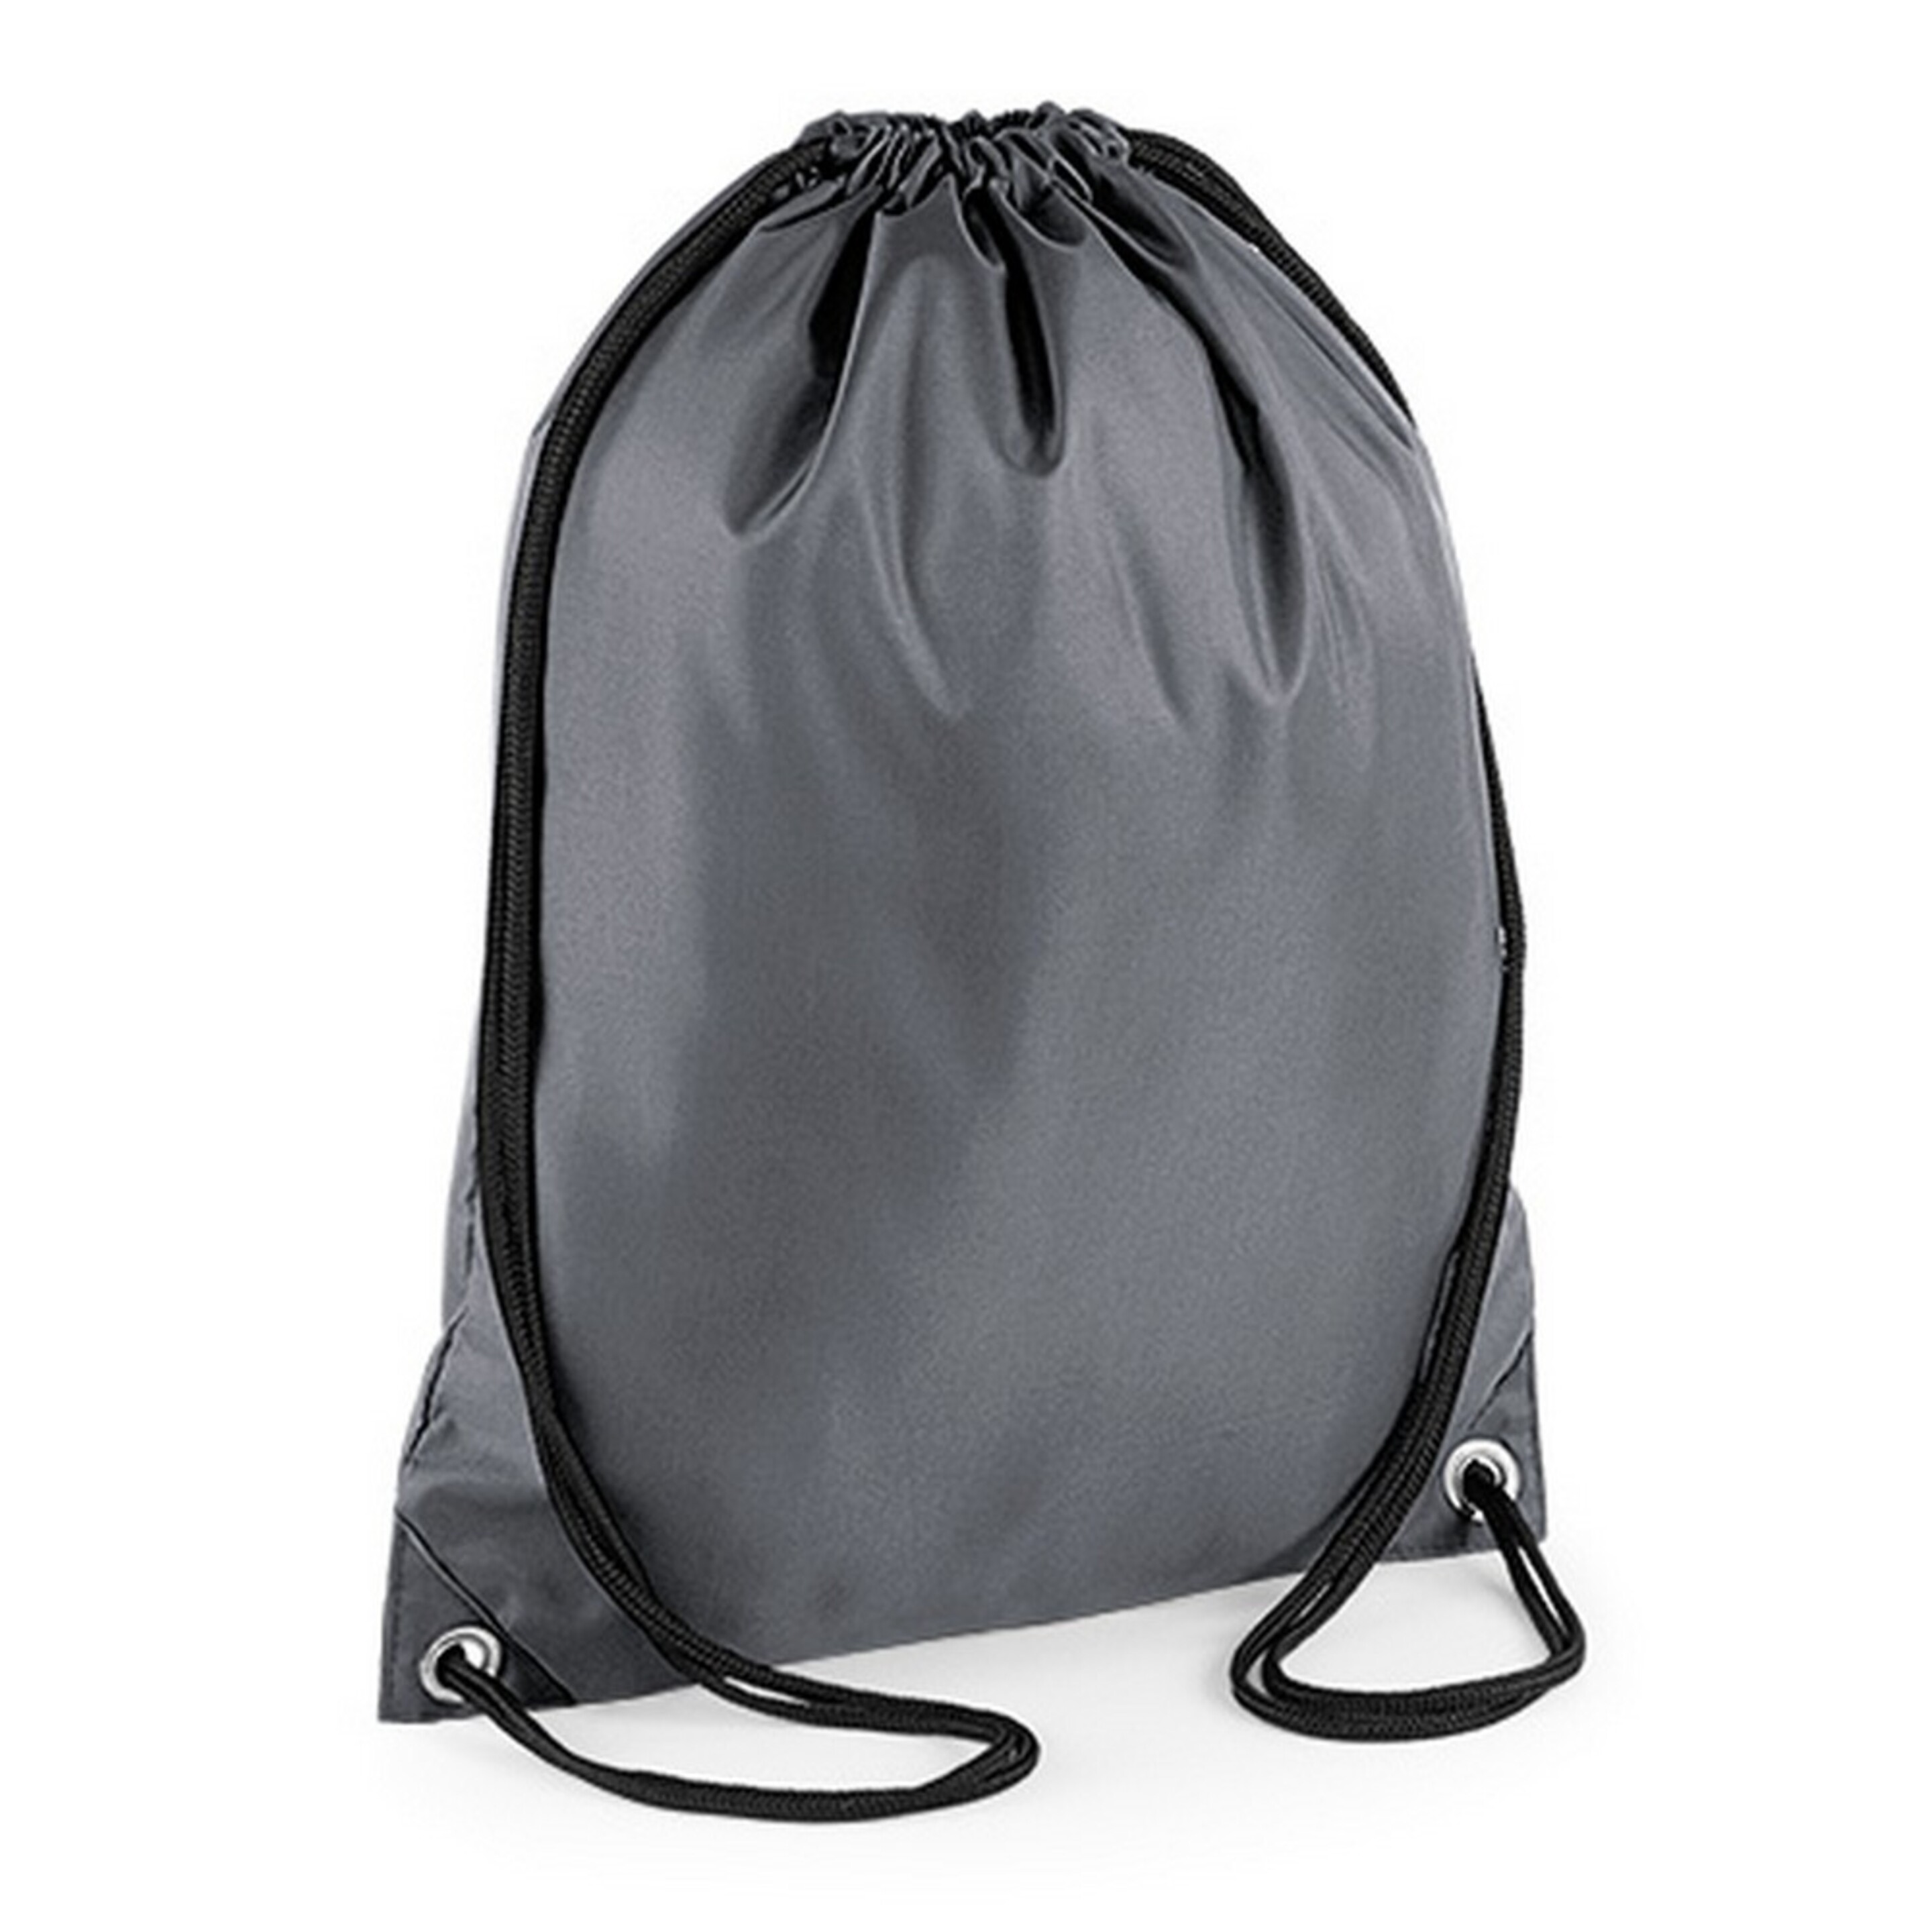 Mochila De Cuerdas Bagbase Impermeable Budget - gris - 